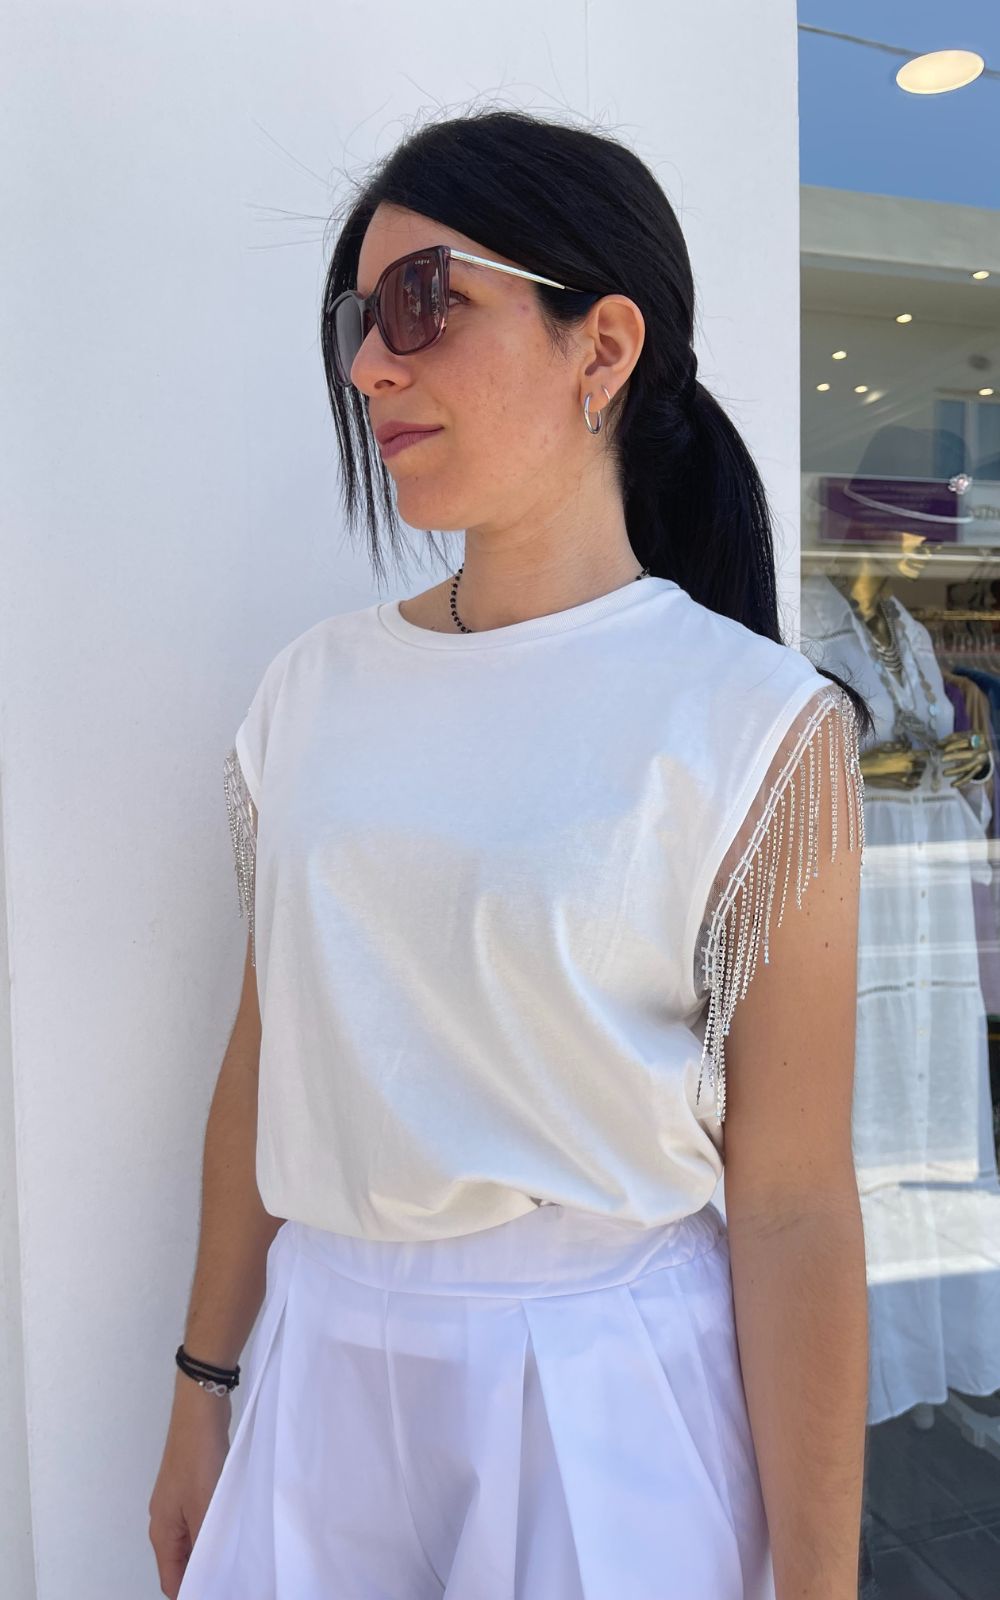 Μπλούζα Γυναικεία Με Κρόσσια Στα Μανίκια  Άσπρη-My Boutique